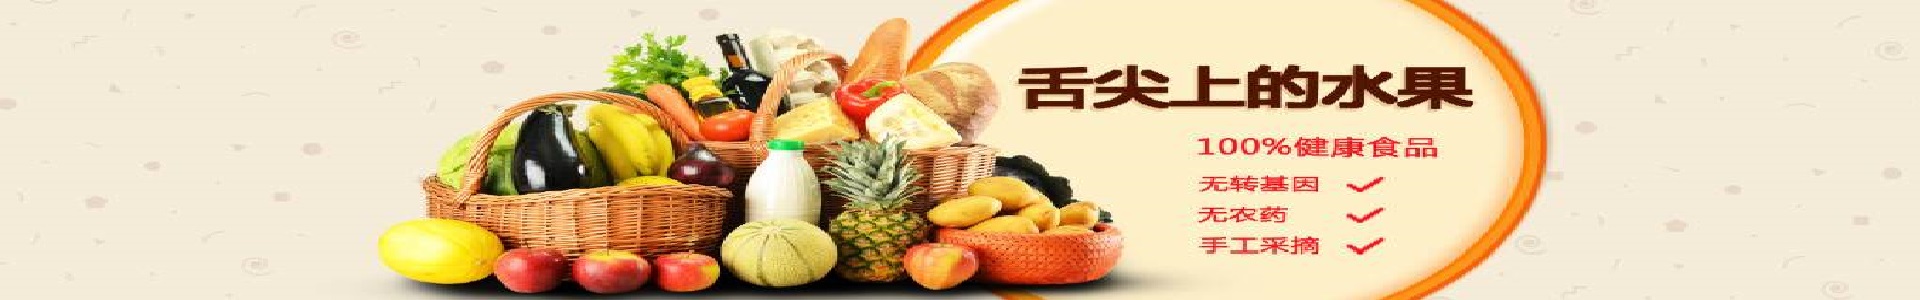 (图文)山西省举办2021山西农业品牌发布会